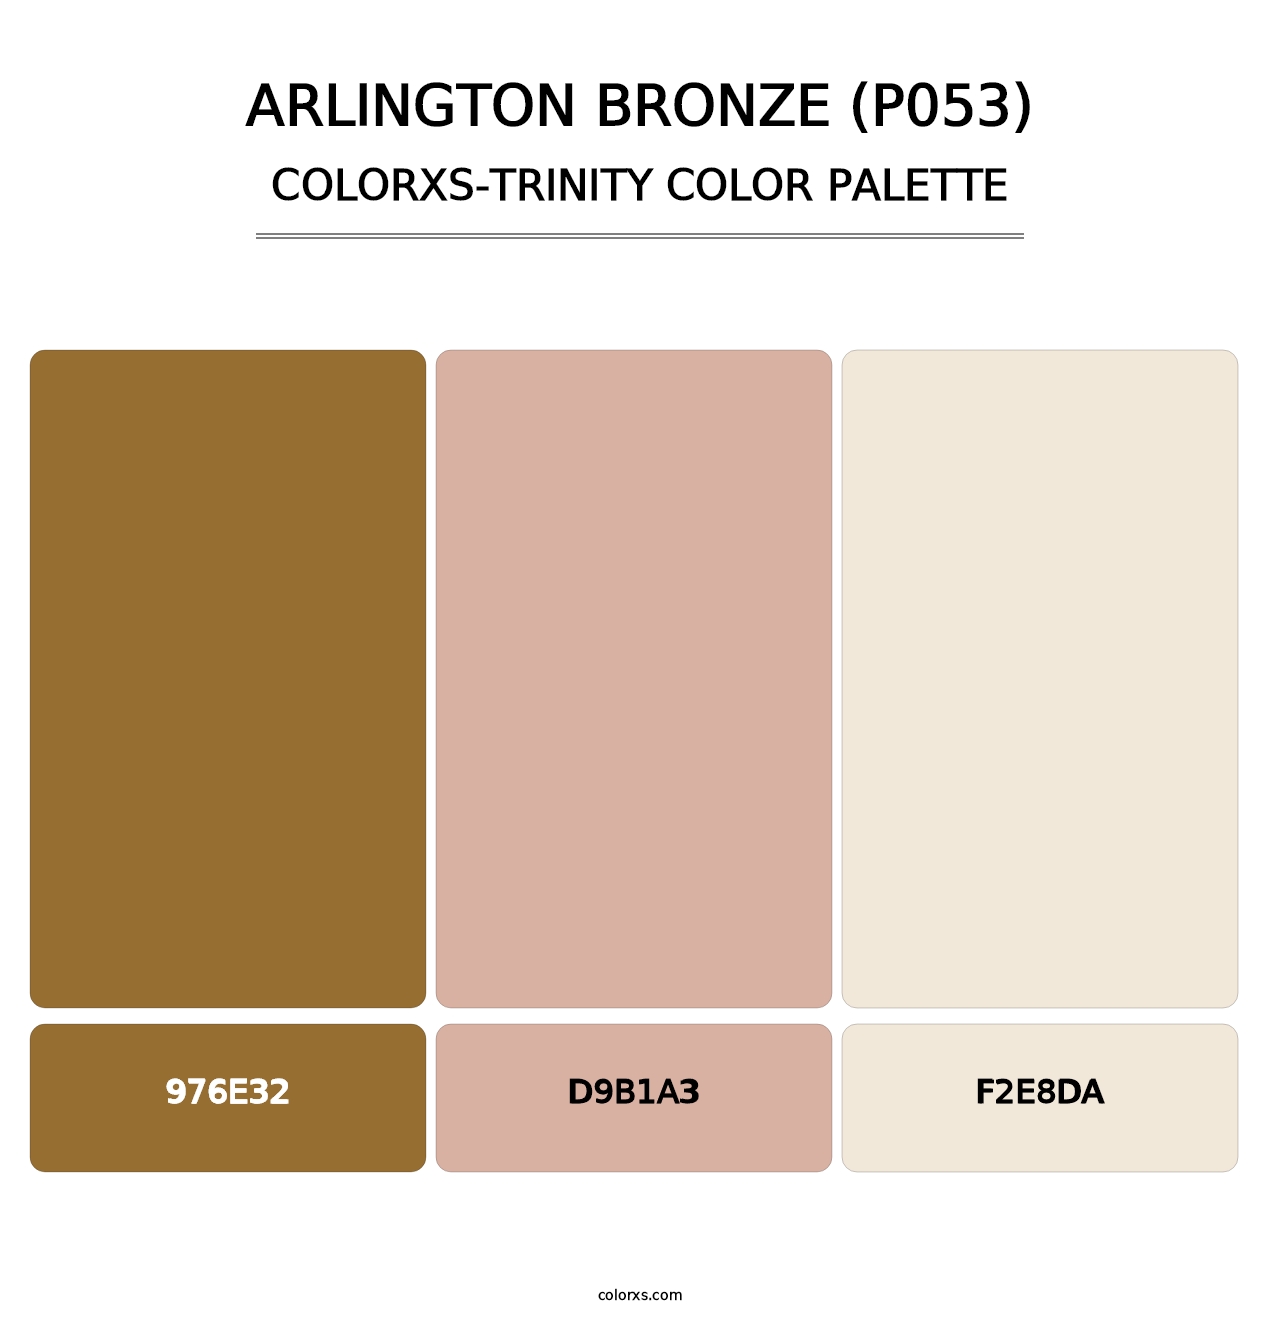 Arlington Bronze (P053) - Colorxs Trinity Palette